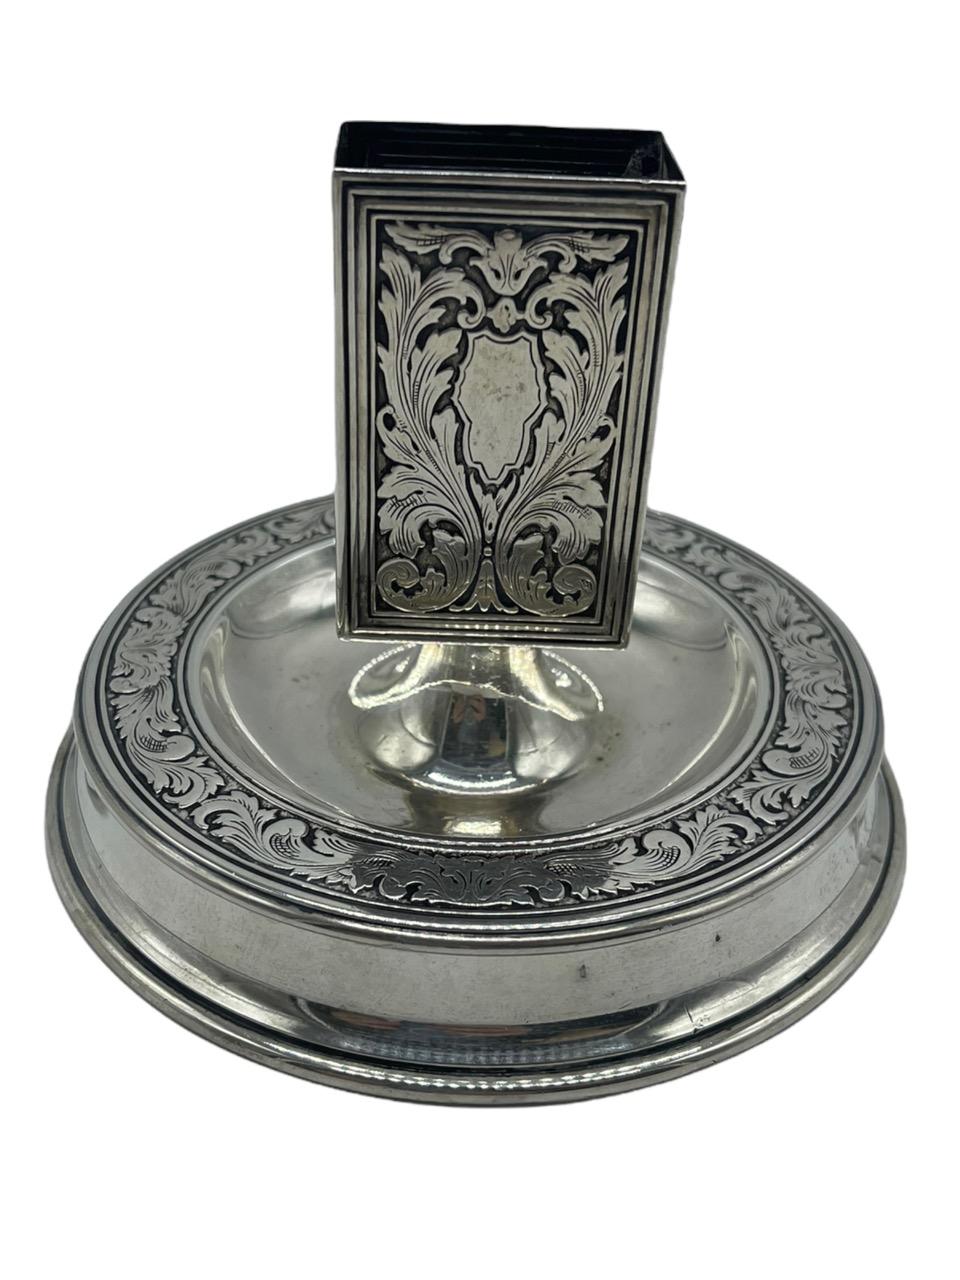 sterling silver matchbox holder